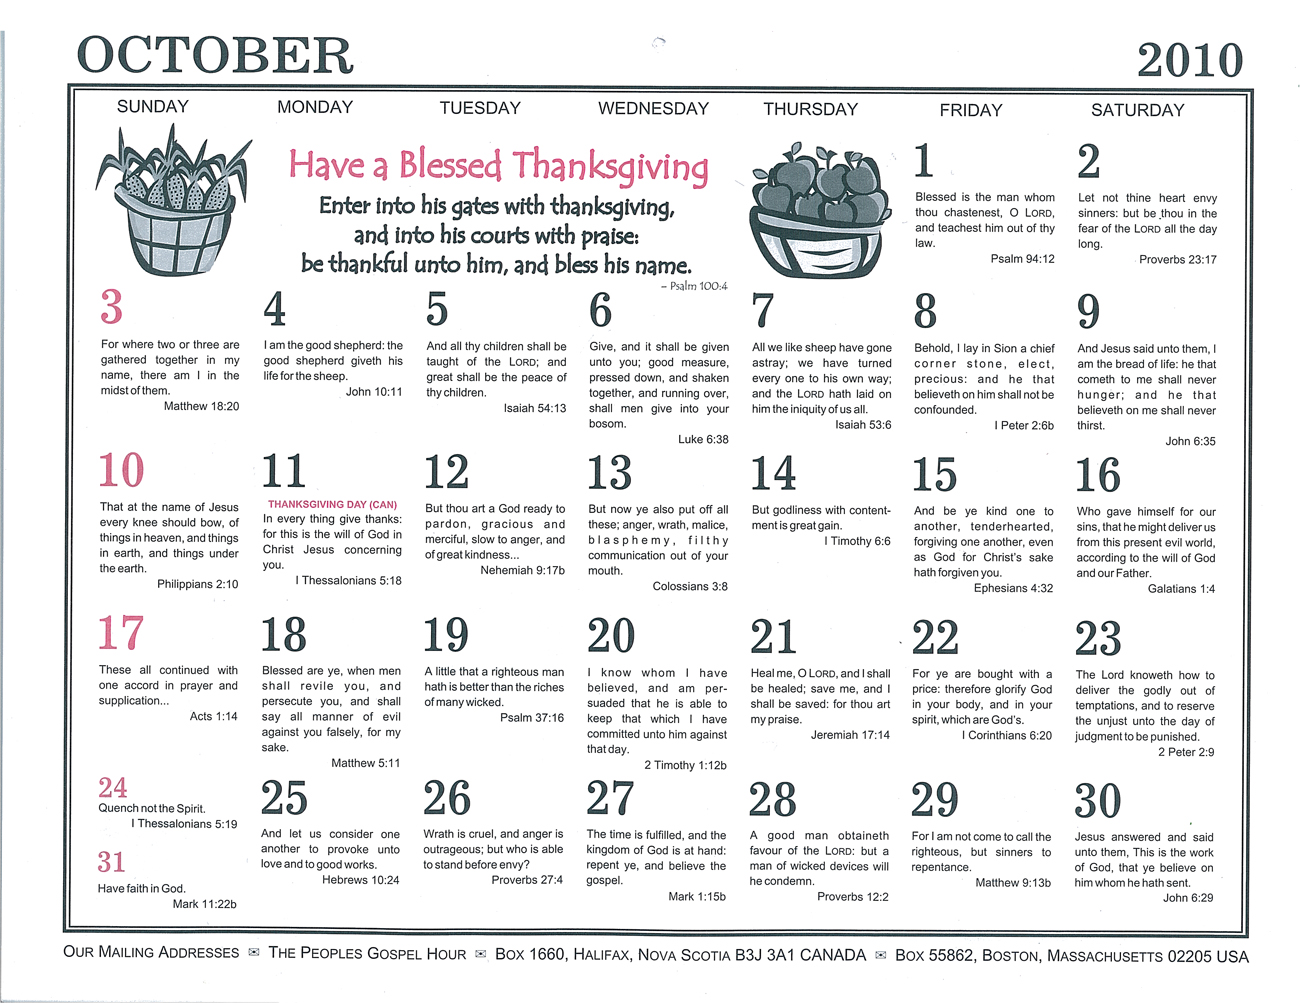 October: 2010 The Peoples Gospel Hour Calendar